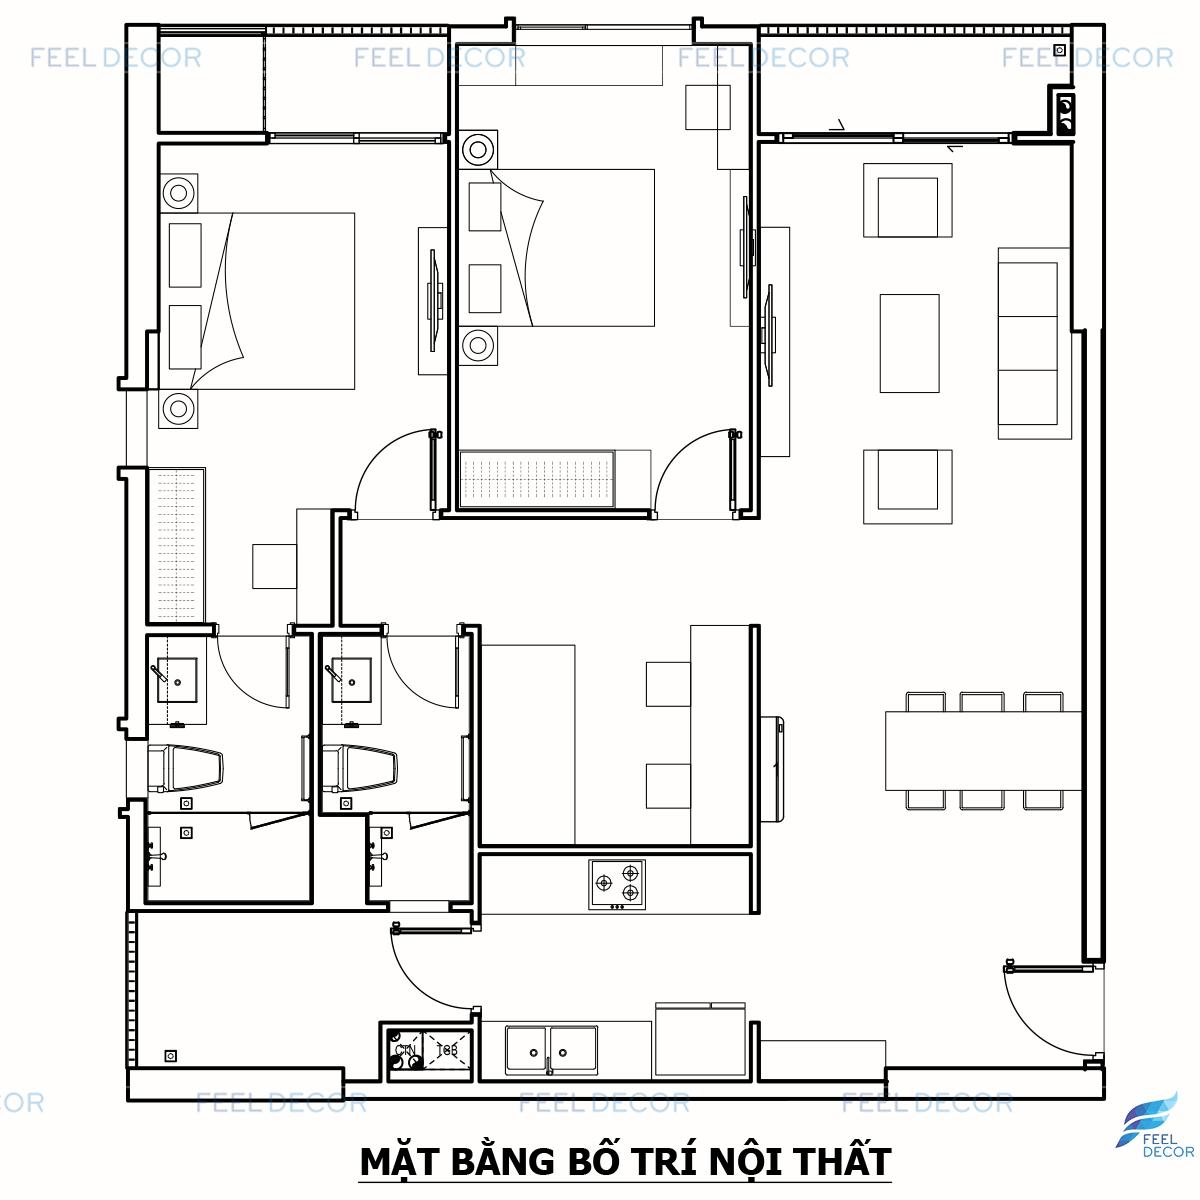 Thiết kế căn hộ chung cư 100m2 3 phòng ngủ đẹp mắt, giá rẻ